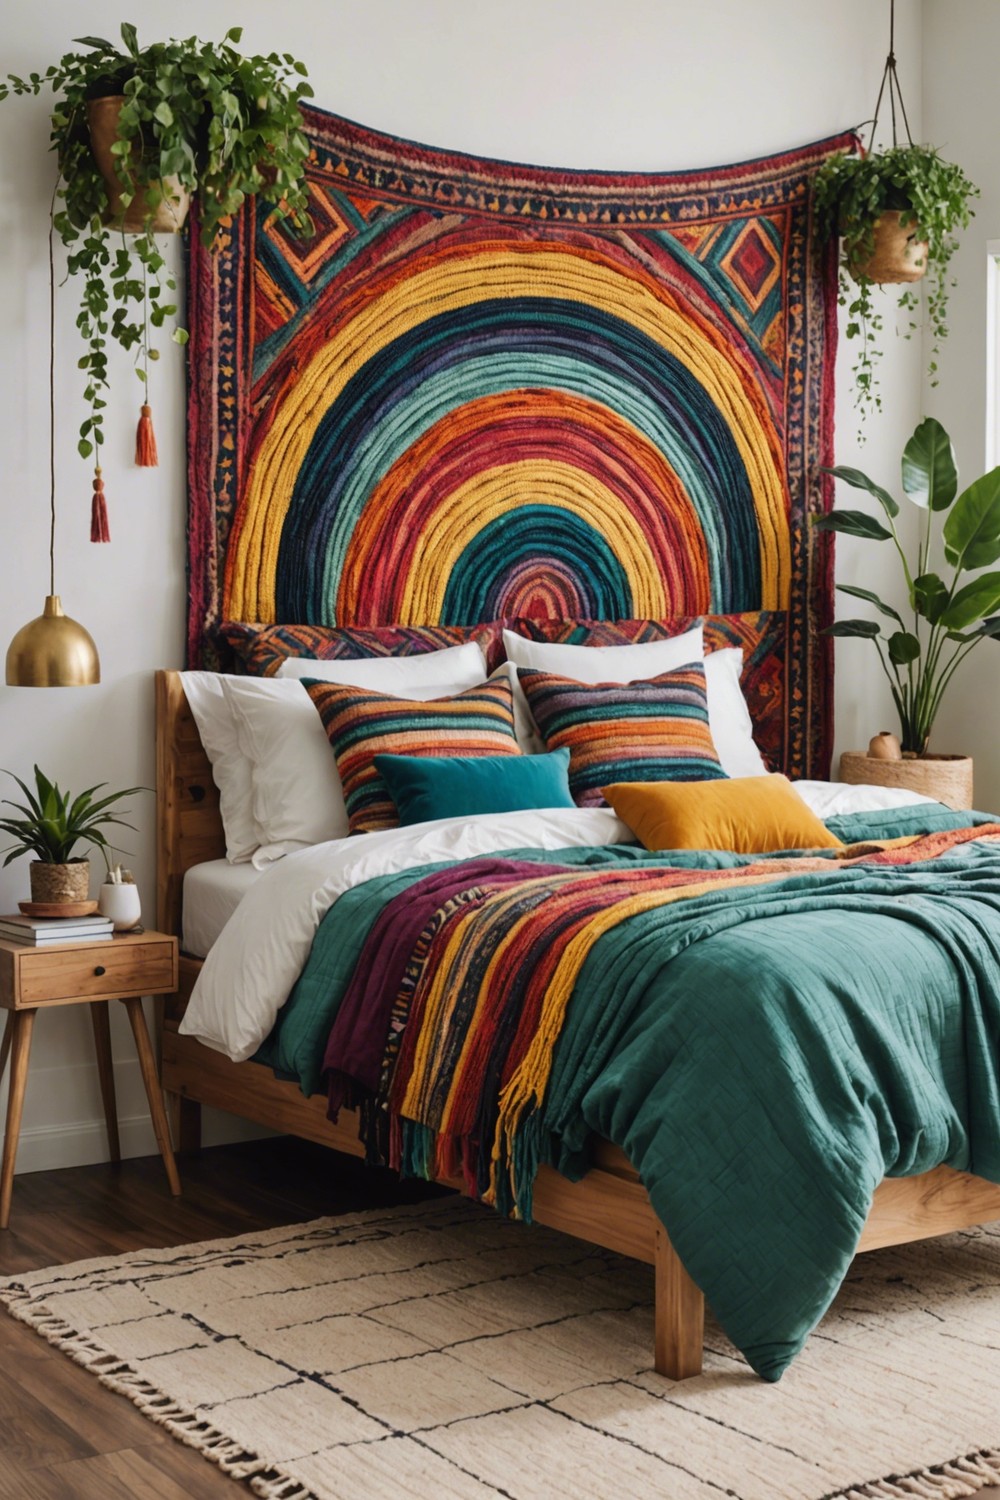 Textile Art with Rainbow Threads